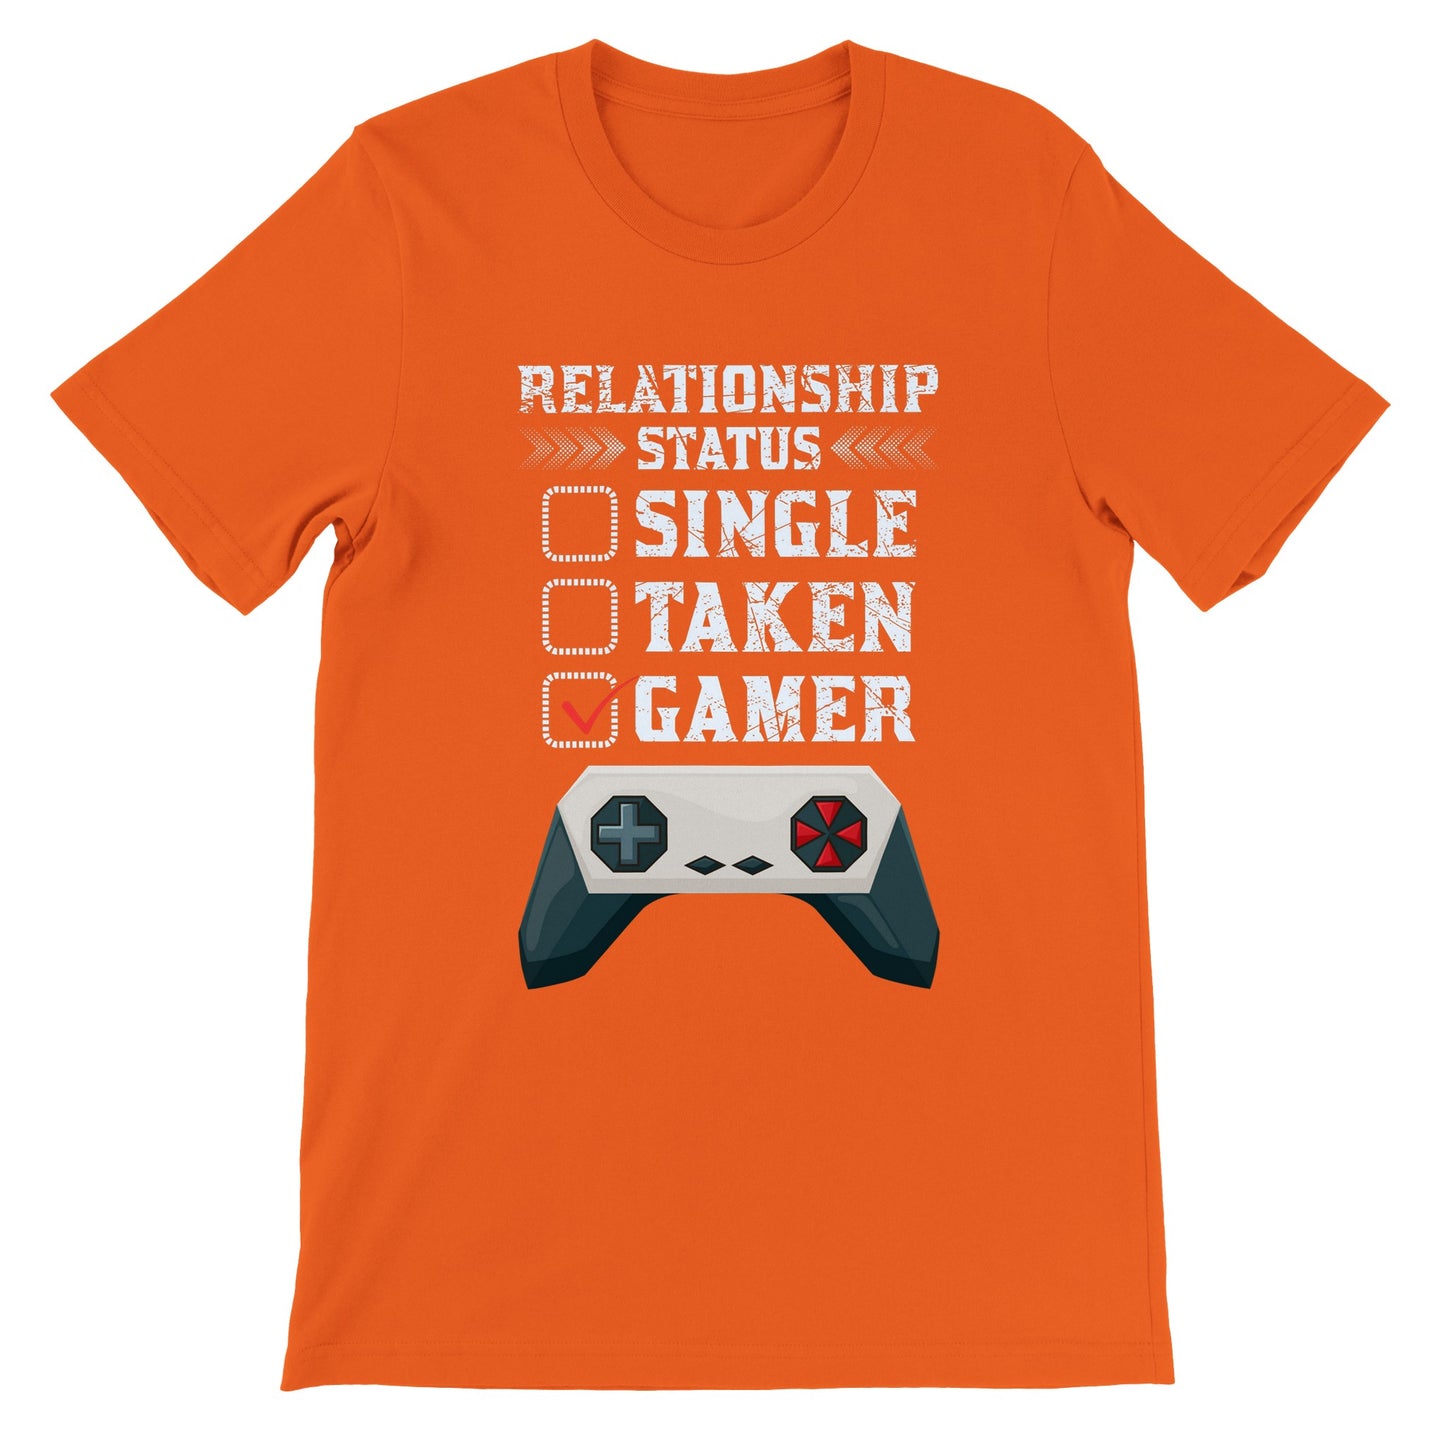 Gaming T-shirts - Relationship Status Single Taken Gamer - Premium Unisex T-shirt